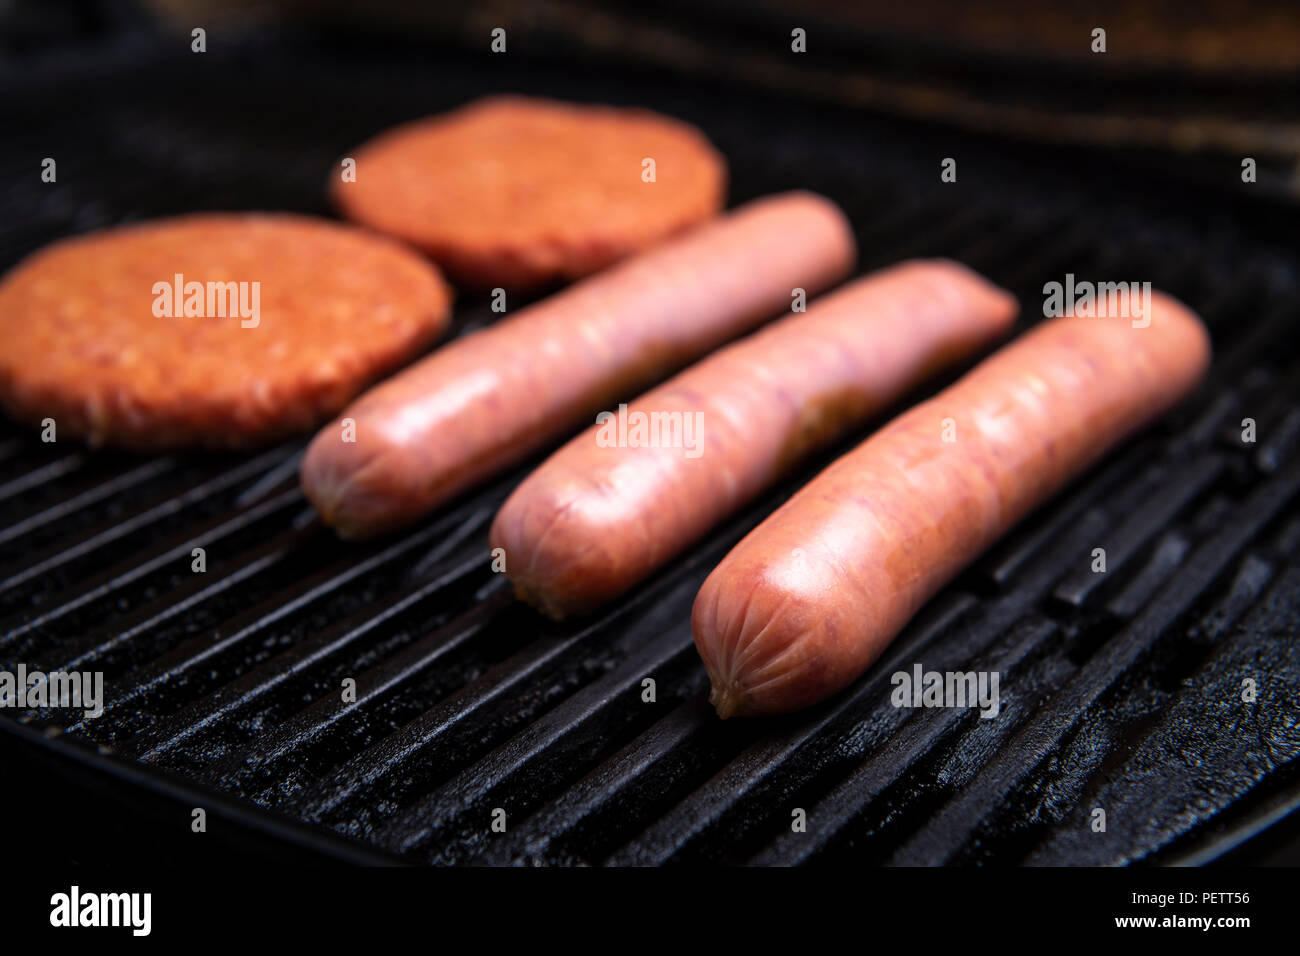 Saucisses barbecue non cuites fraîches, des hamburgers et du pain prêt à être grillé, assis sur un grill Banque D'Images